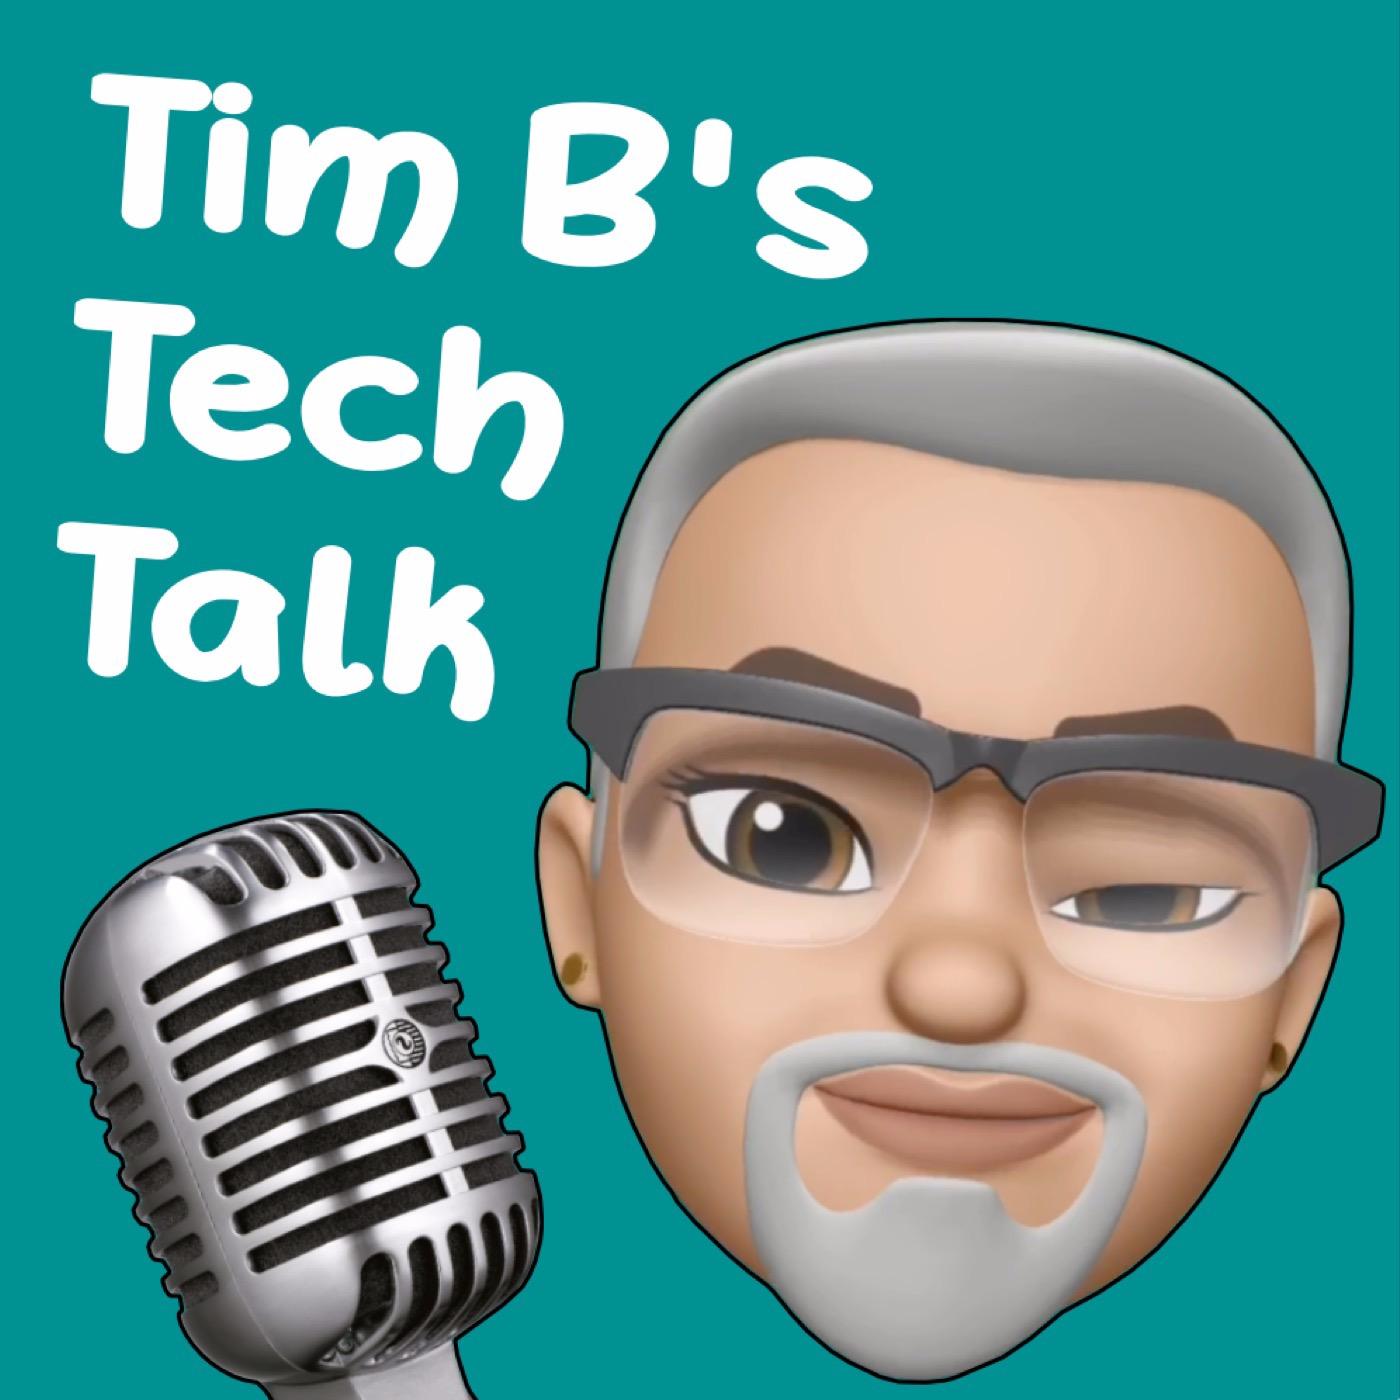 Tim B’s Tech Talk